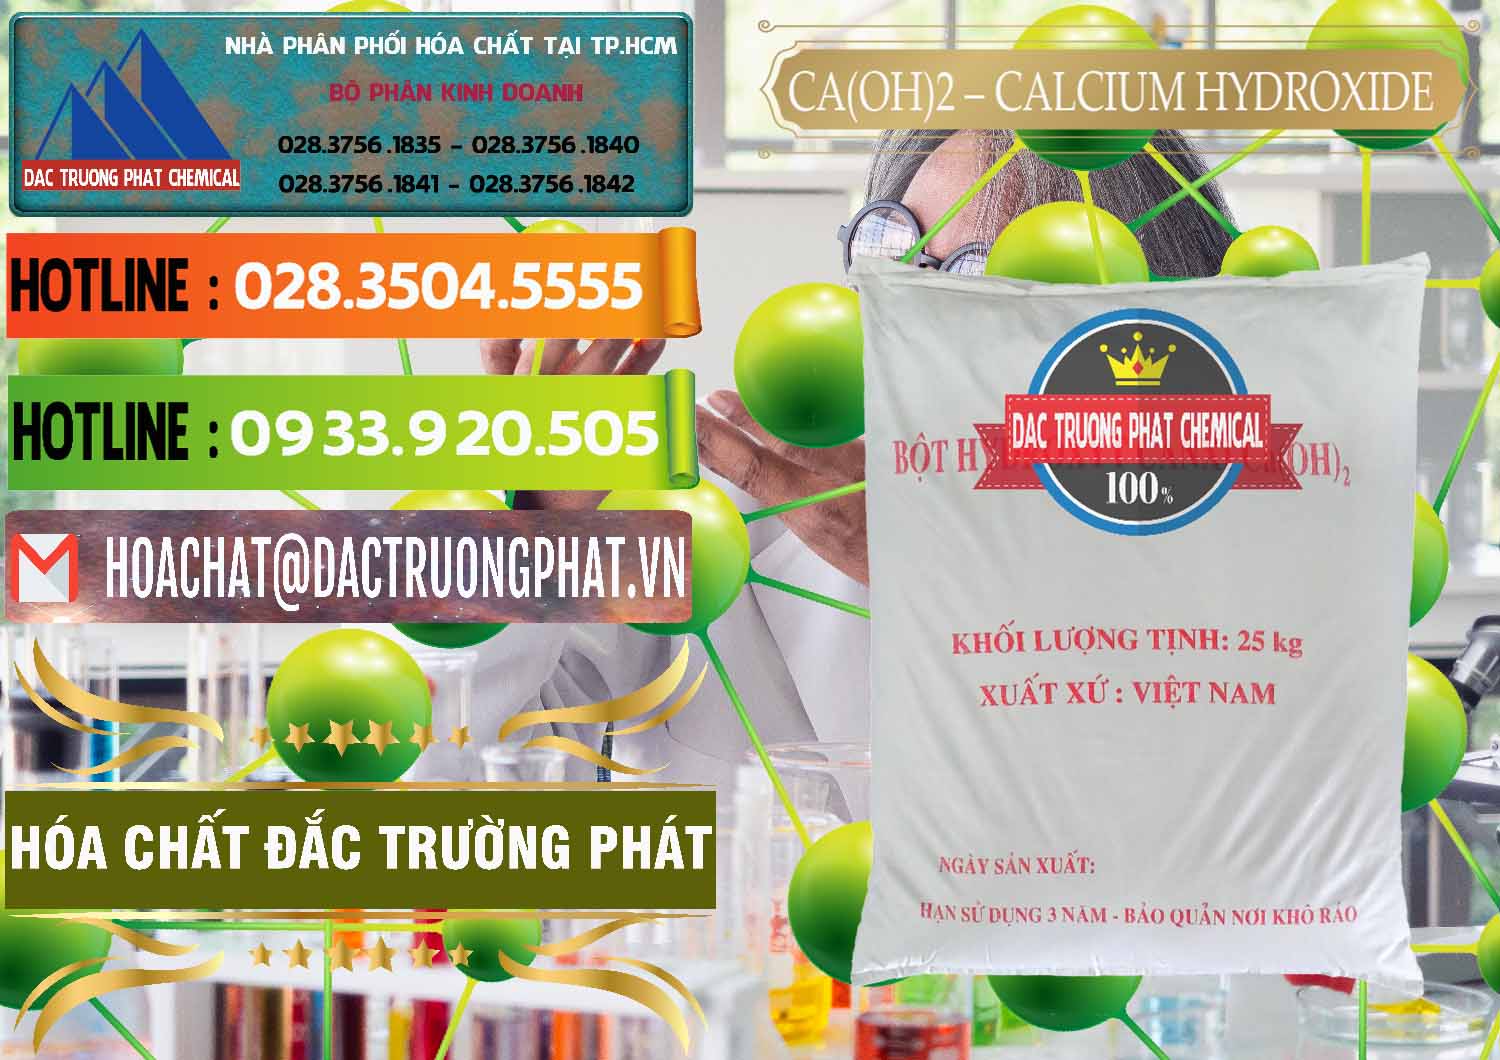 Cty chuyên bán và phân phối Ca(OH)2 - Calcium Hydroxide Việt Nam - 0186 - Nhà cung cấp và bán hóa chất tại TP.HCM - cungcaphoachat.com.vn